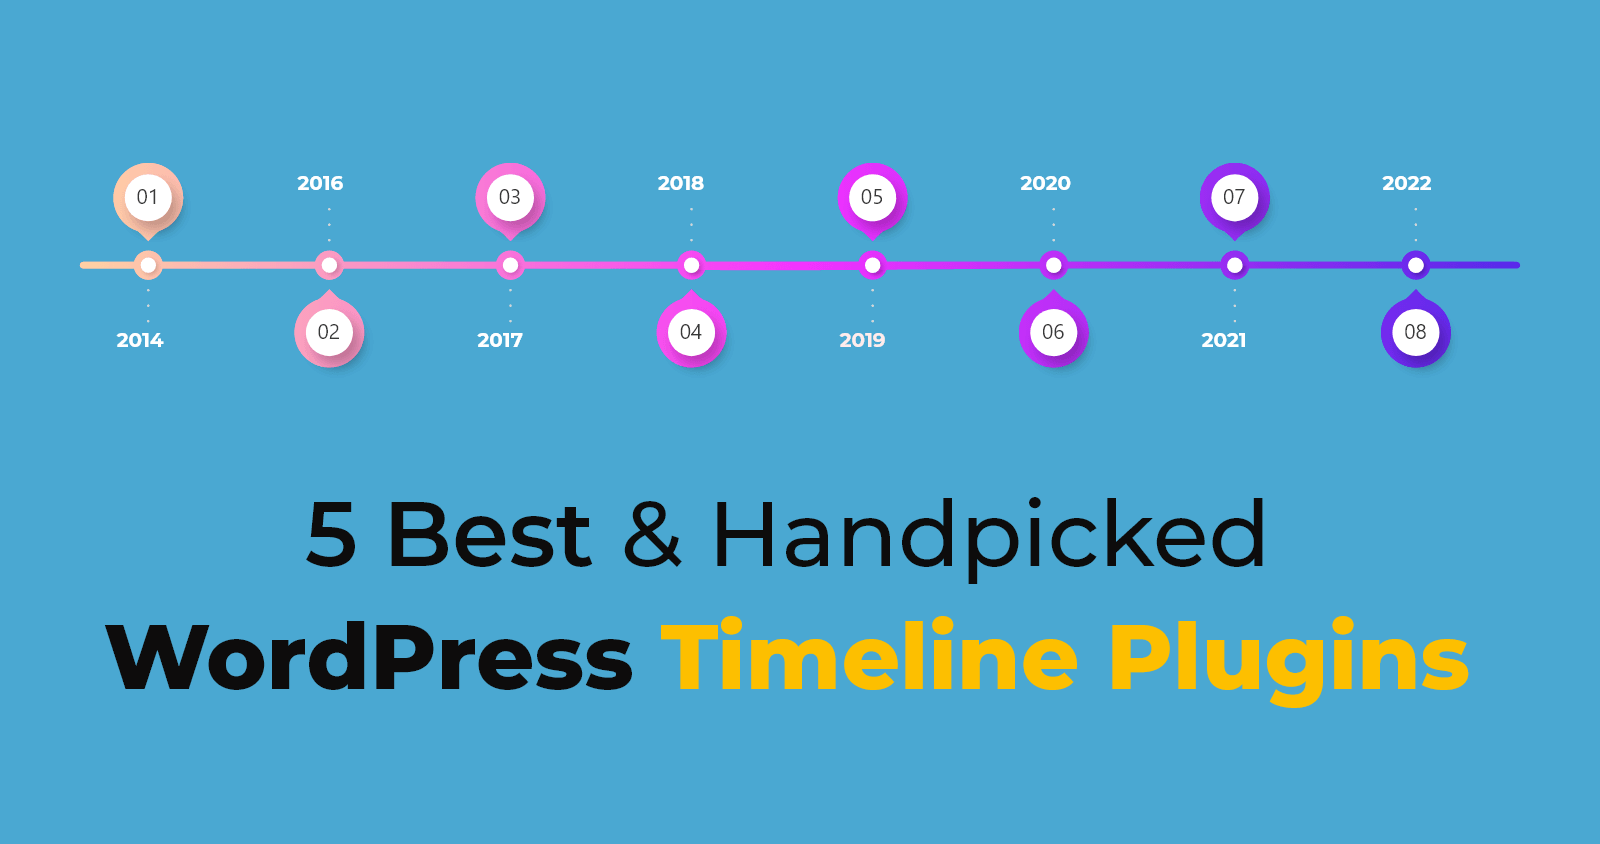 5 Best & Handpicked WordPress Timeline Plugins